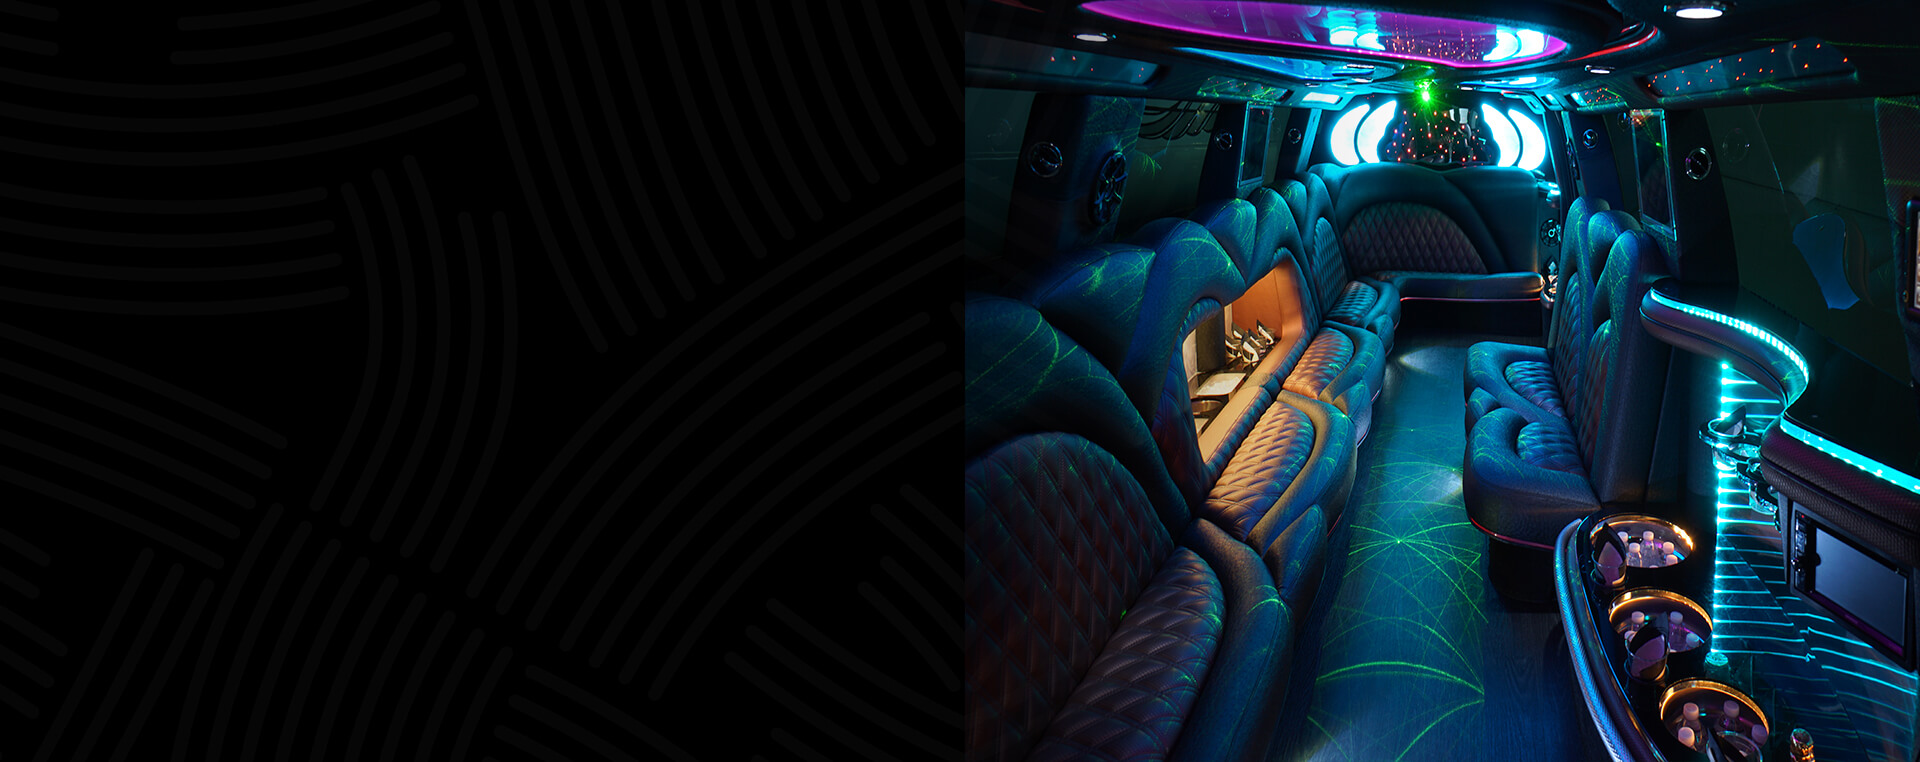 Stunning limo bus interior